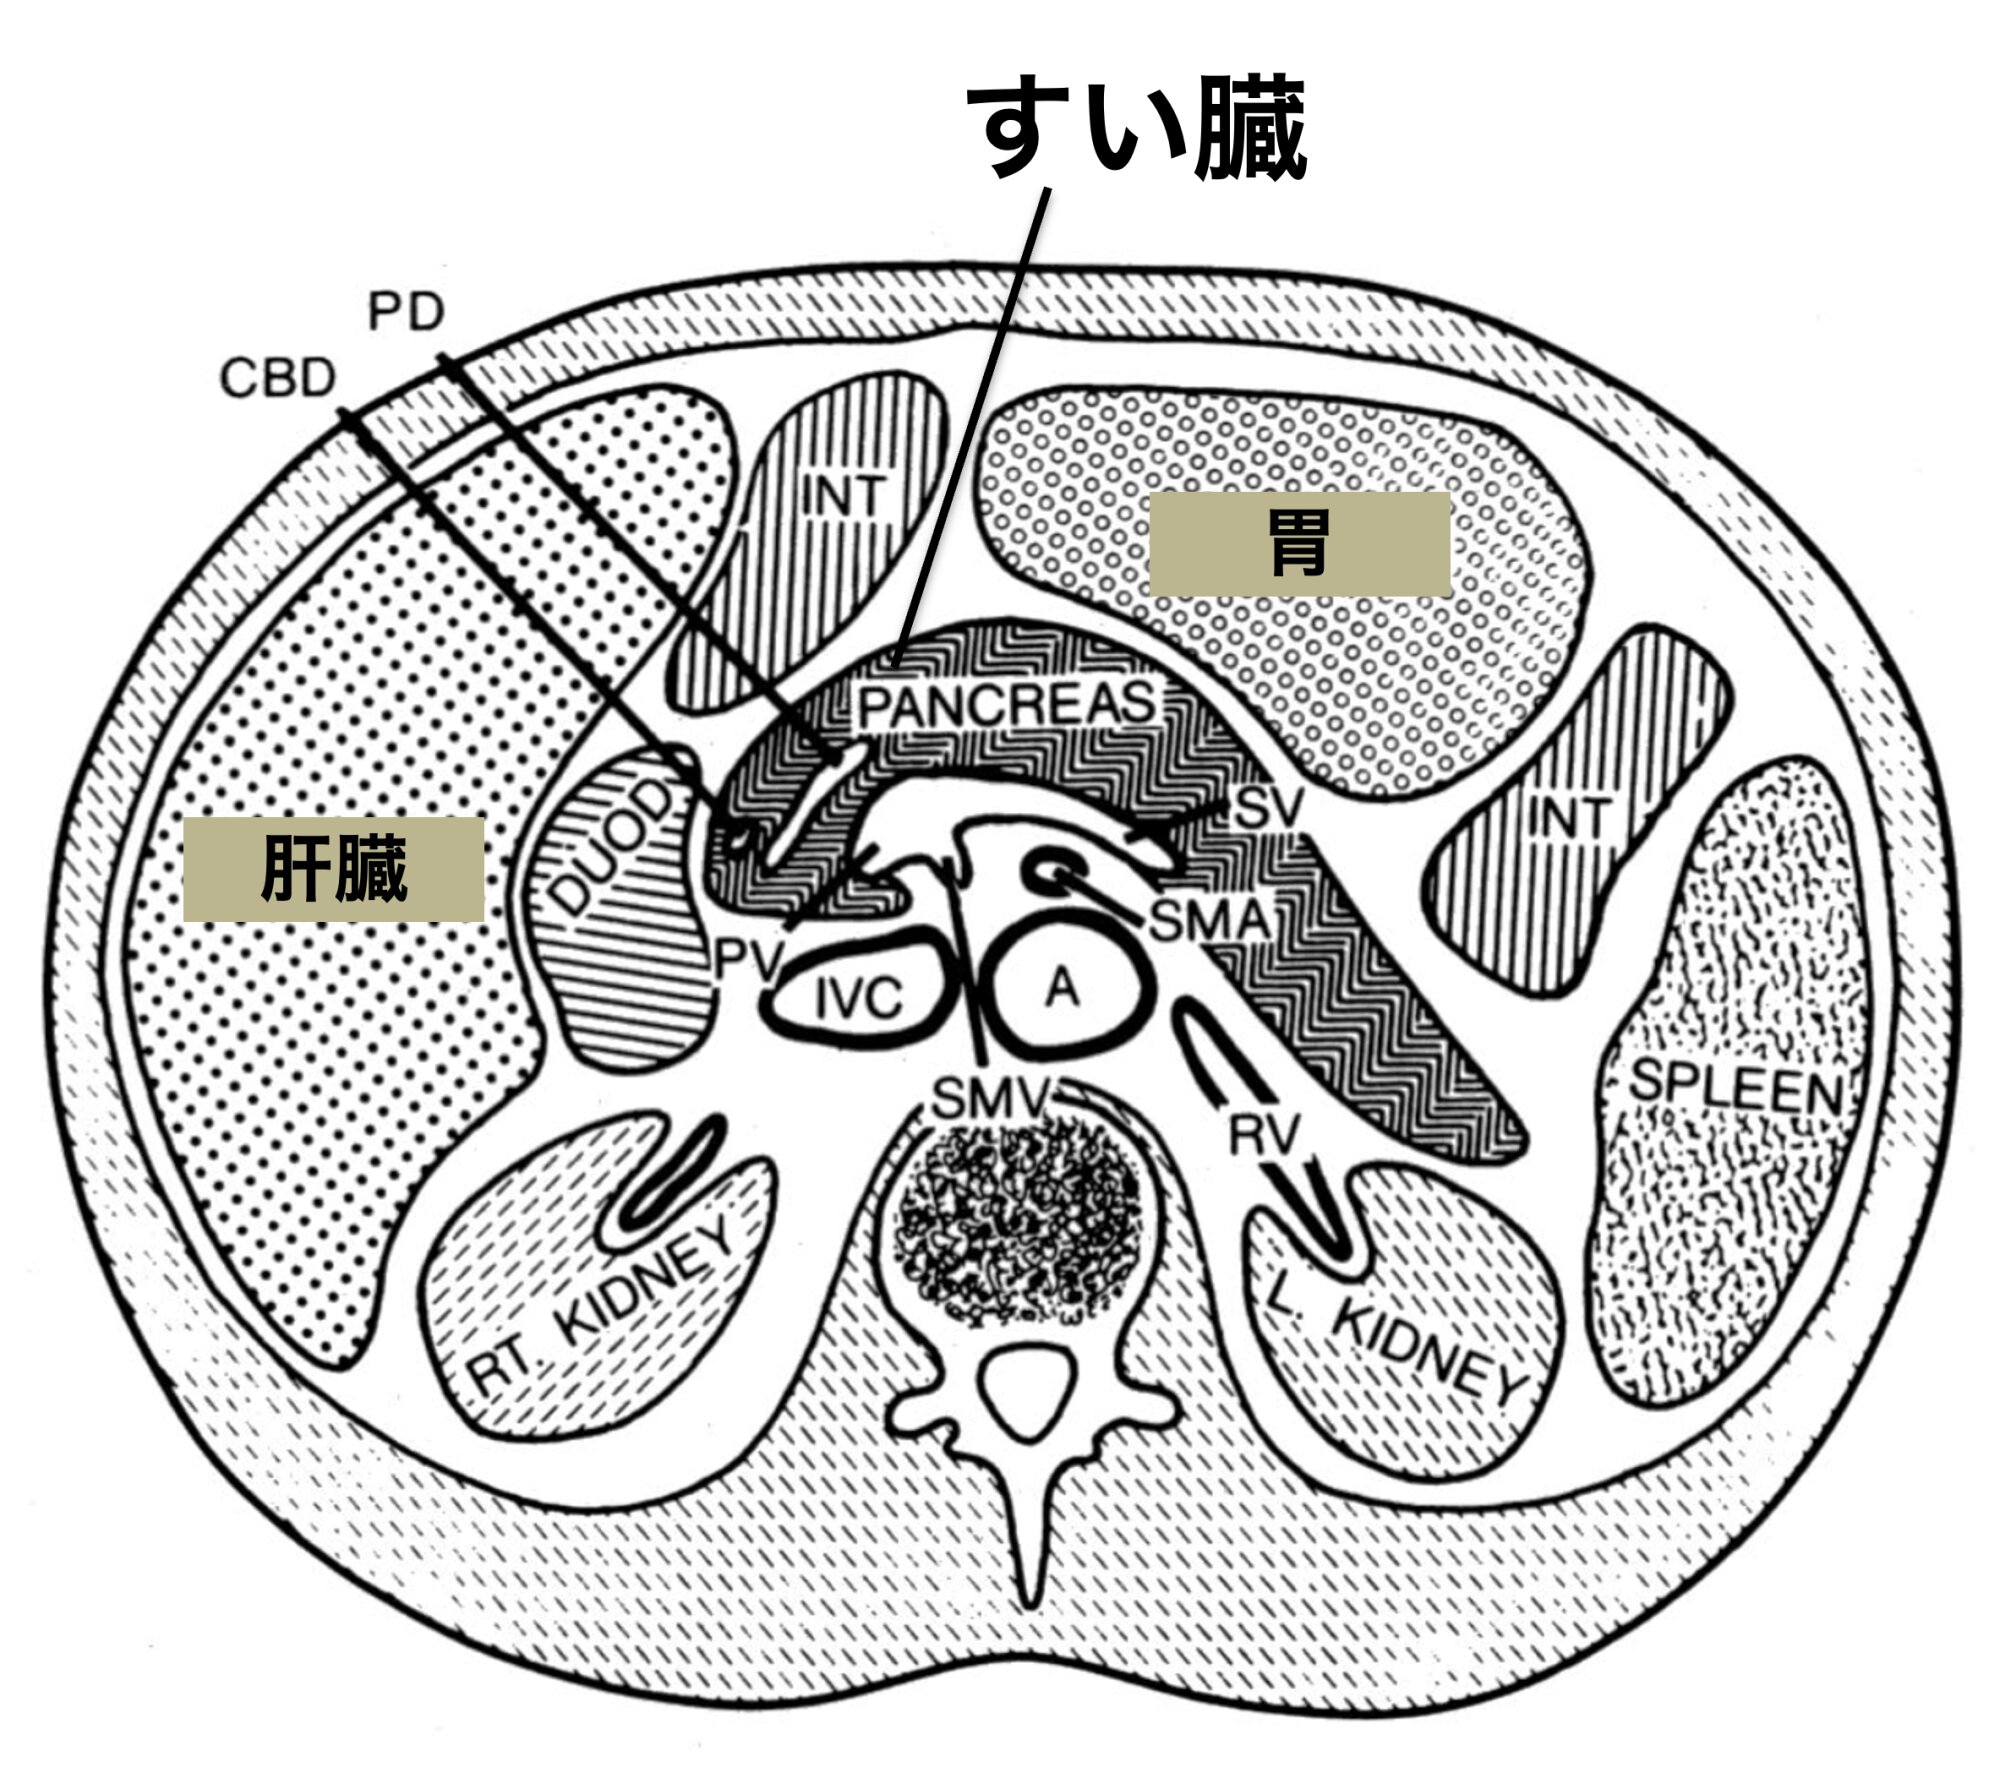 すい臓（PANCREAS）の位置（断面）。身体の中心部に位置し、検査しにくい。図はDale E. Bockman, 